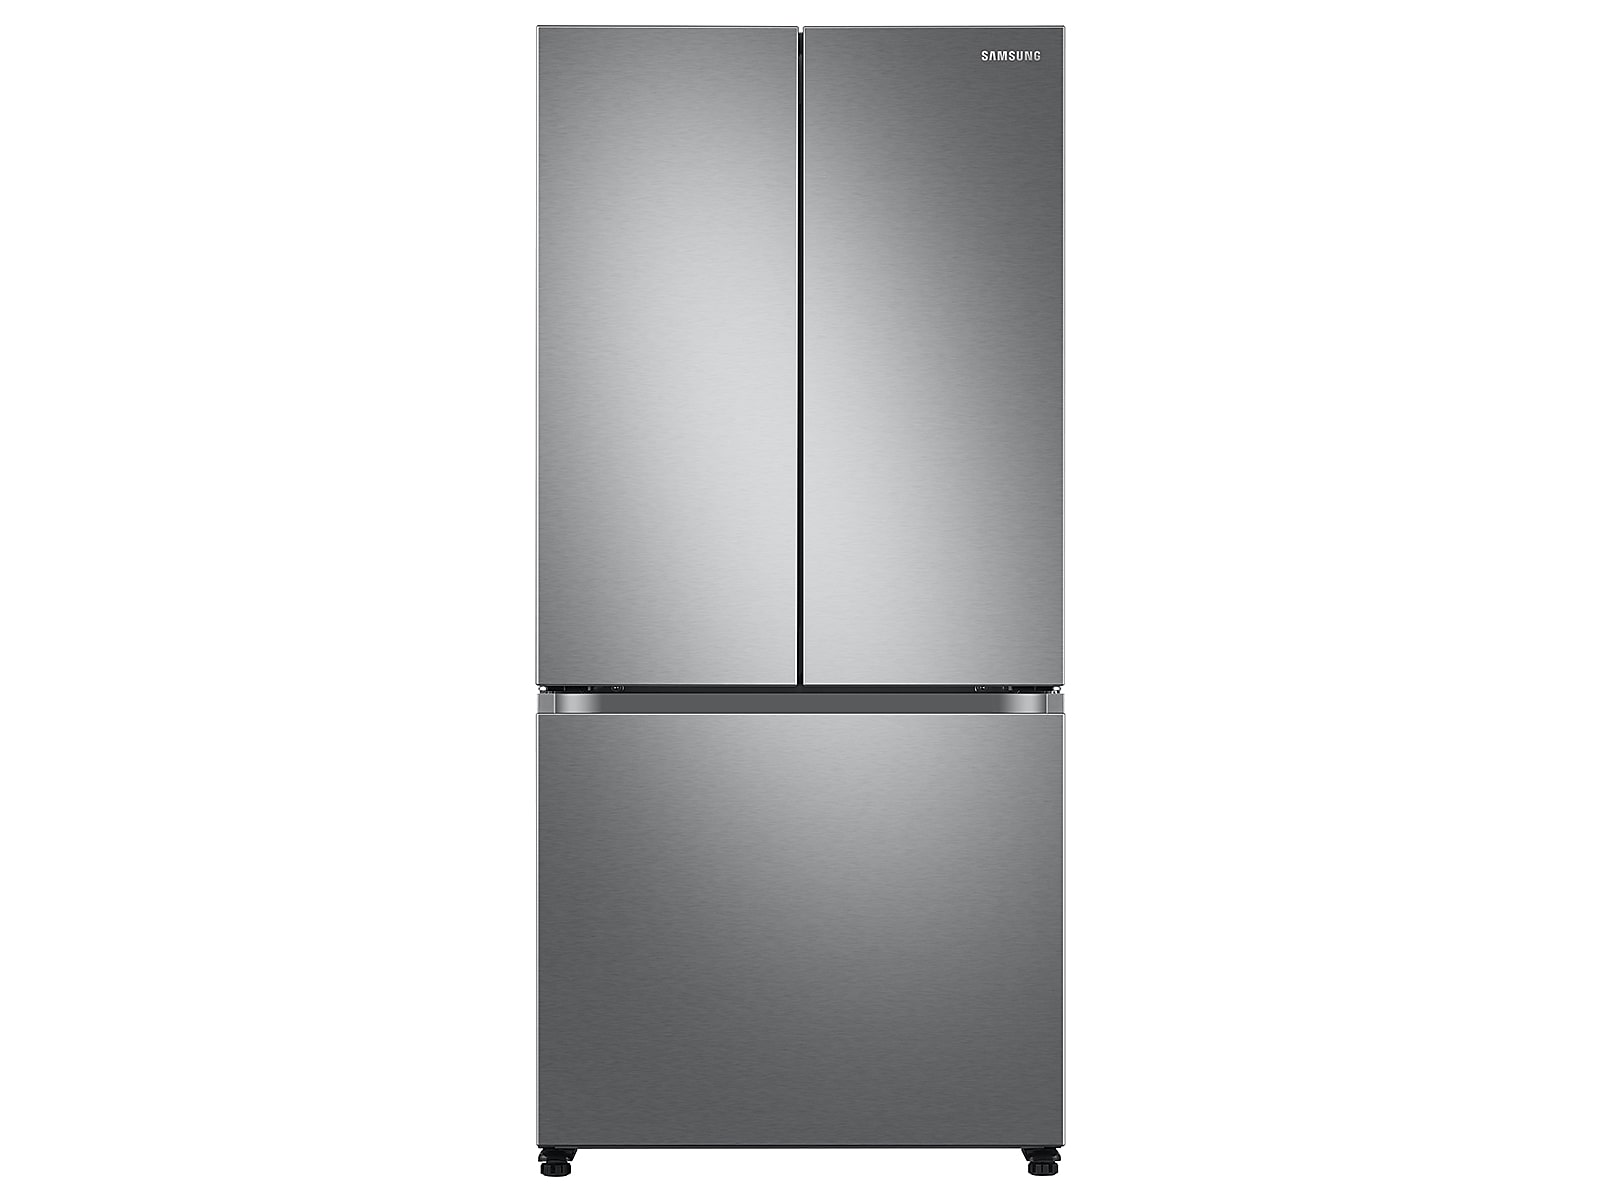 Samsung 18 cu. ft. Smart Counter Depth 3-Door French Door Refrigerator in Silver(RF18A5101SR/AA)